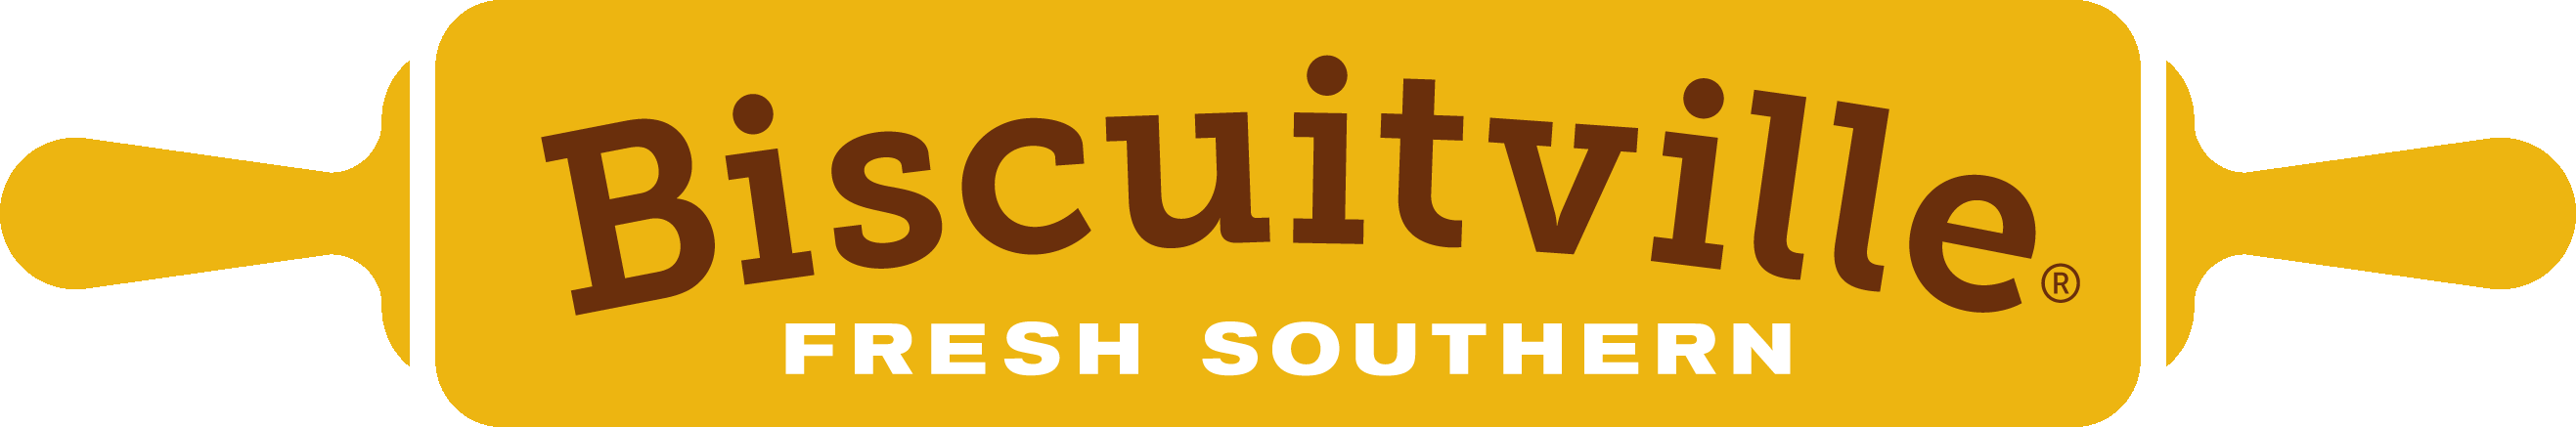 Biscuitville Logo - For the Media